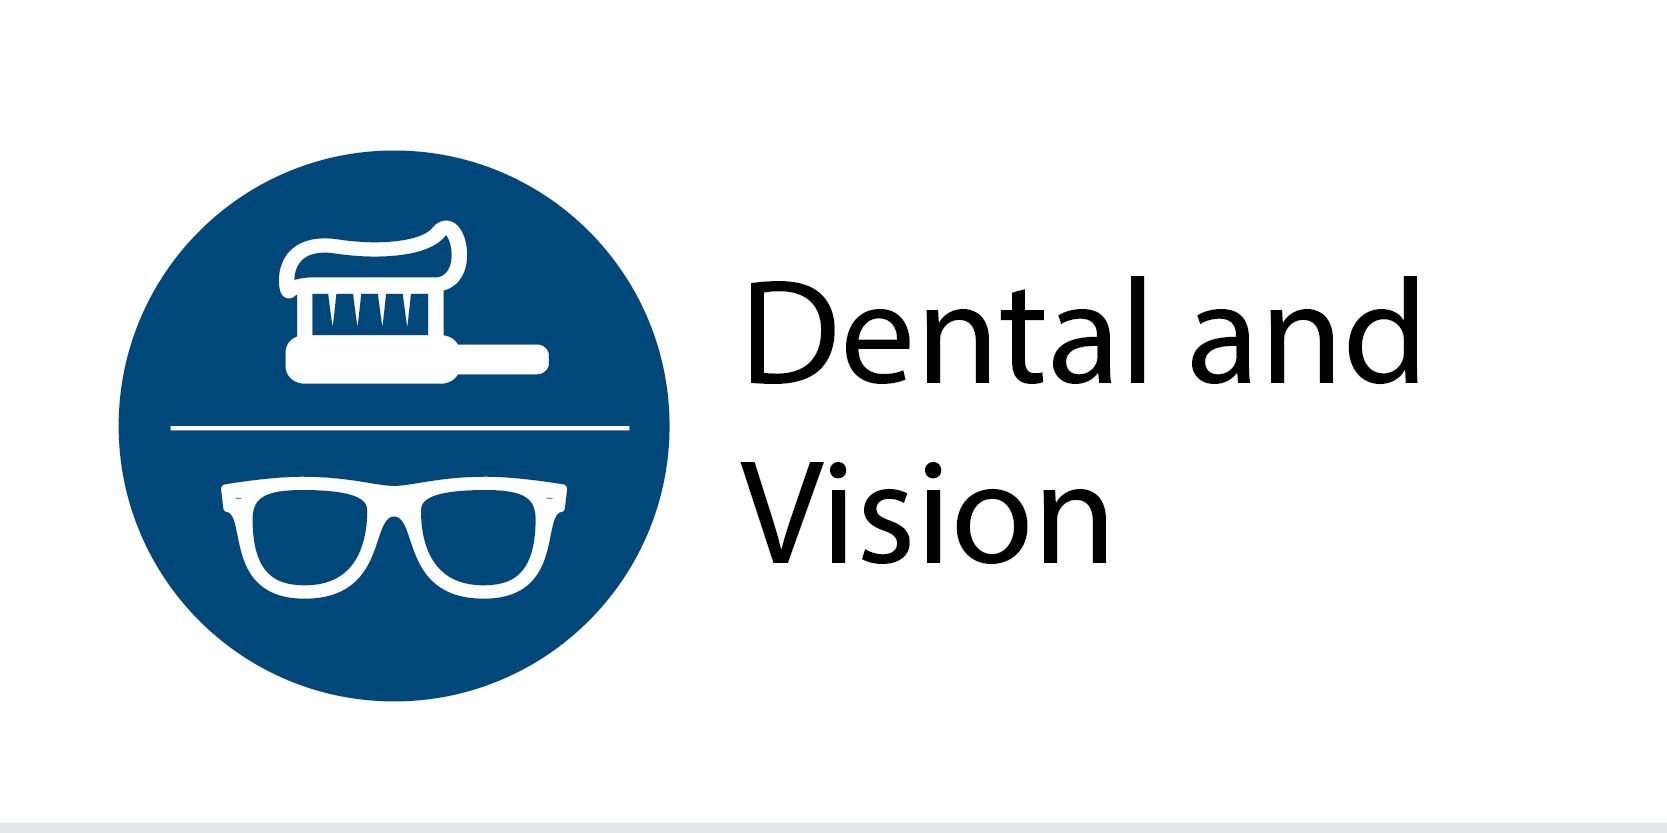 Vision & Dental